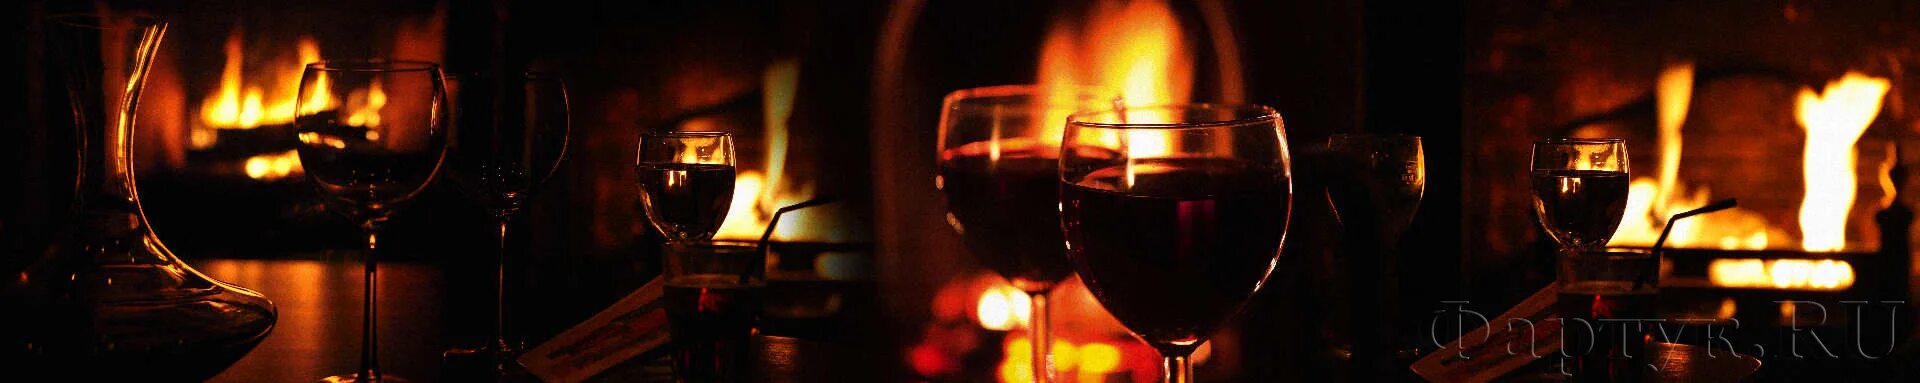 Бокал вина огонь. Бокал вина на фоне огня. Бокал с вином на фоне камина. Бокал на фоне огня. Вино на фоне костра.